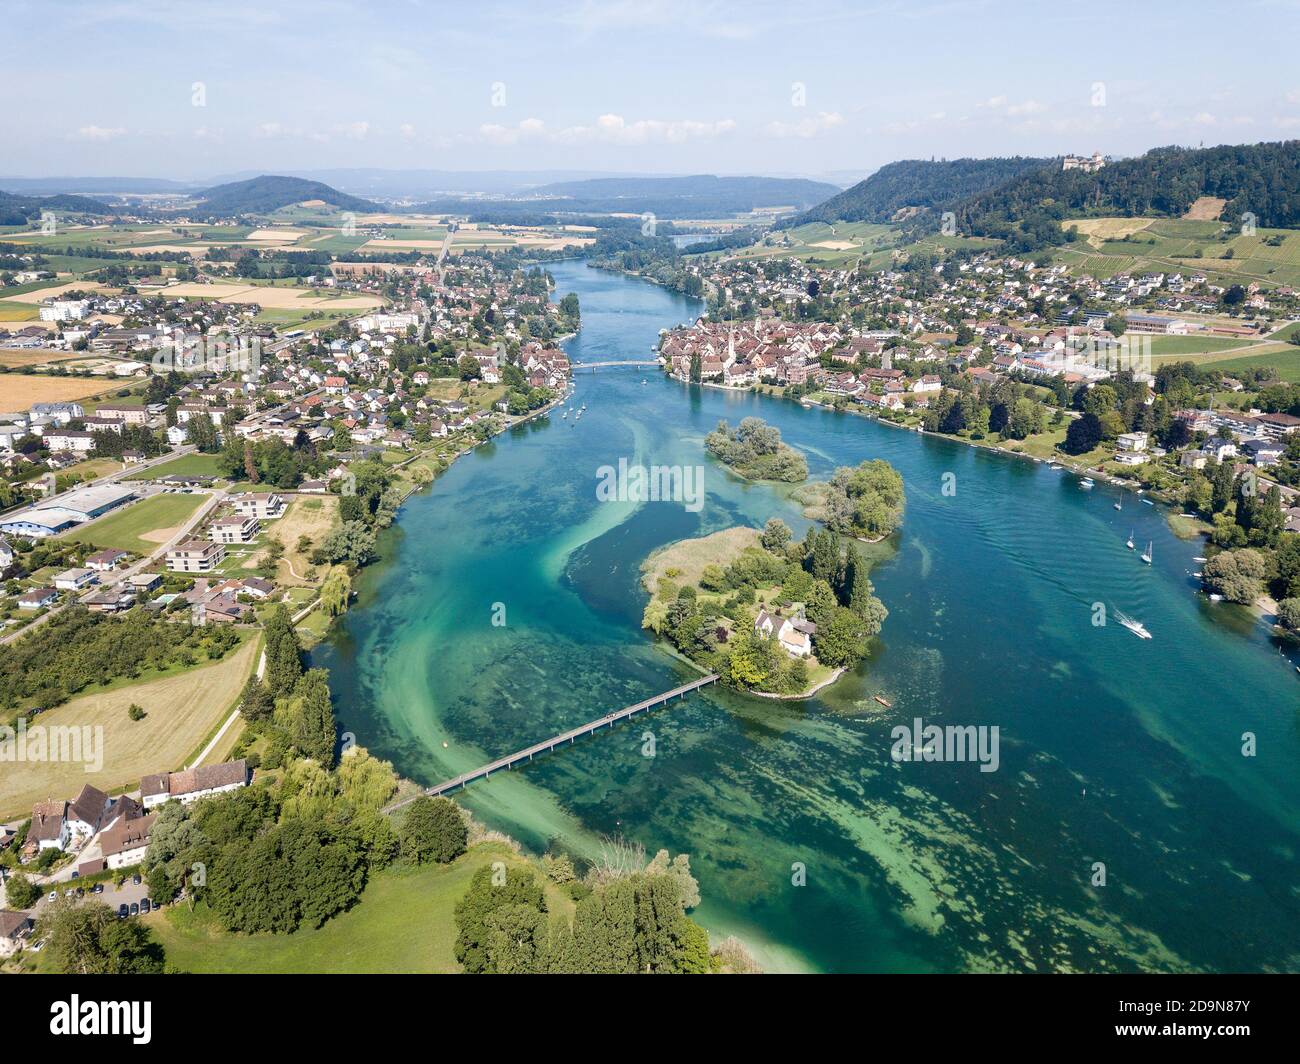 Photographie aérienne de la partie initiale du Rhin au lac de Constance : islet werd, Stein am Rhein, Suisse Banque D'Images